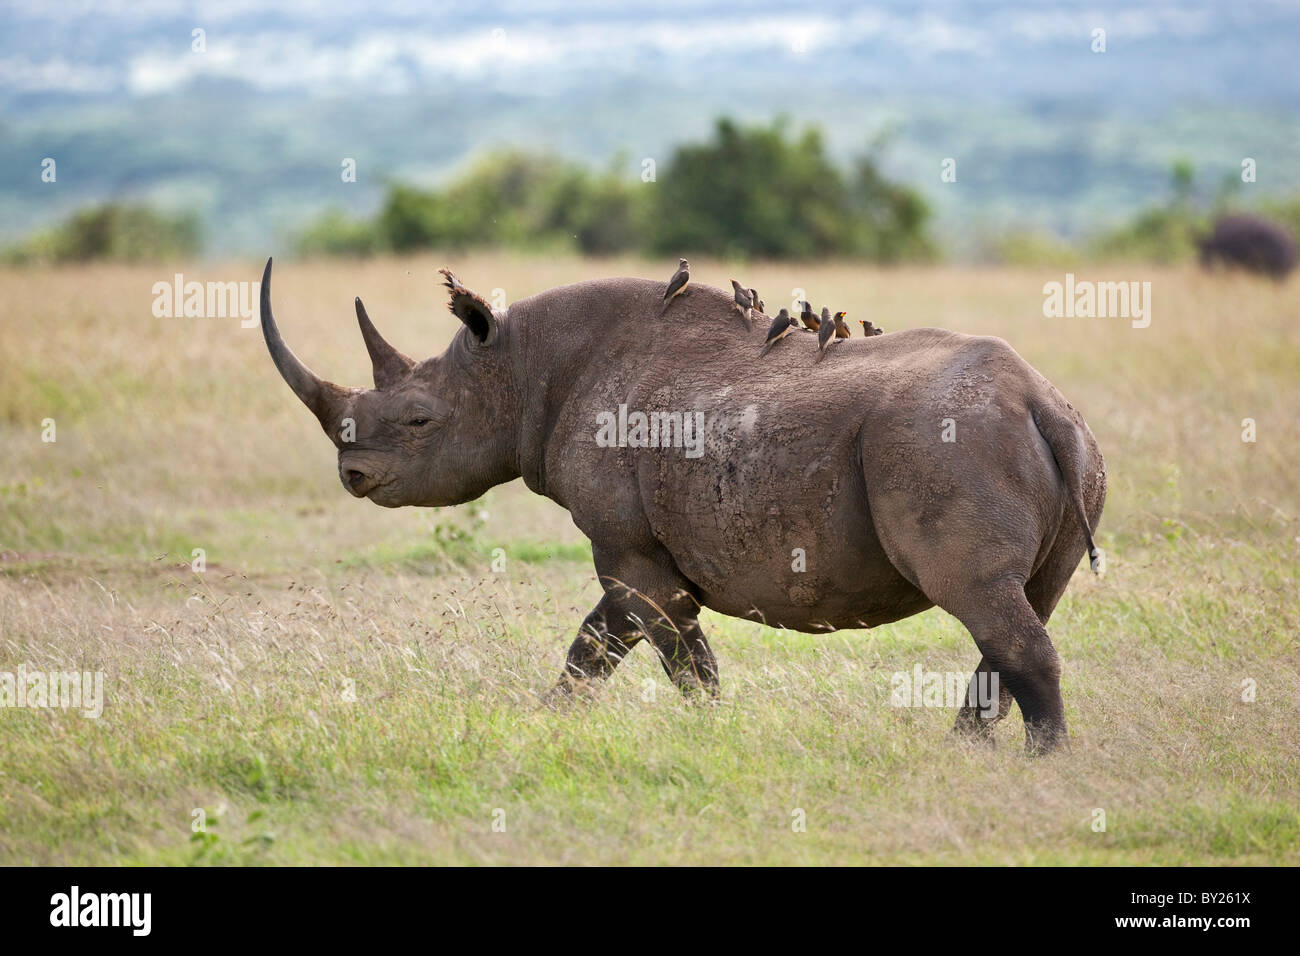 Yellow-Oxpeckers monter sur le dos d'un rhinocéros noir. Mweiga, Solio, Kenya Banque D'Images